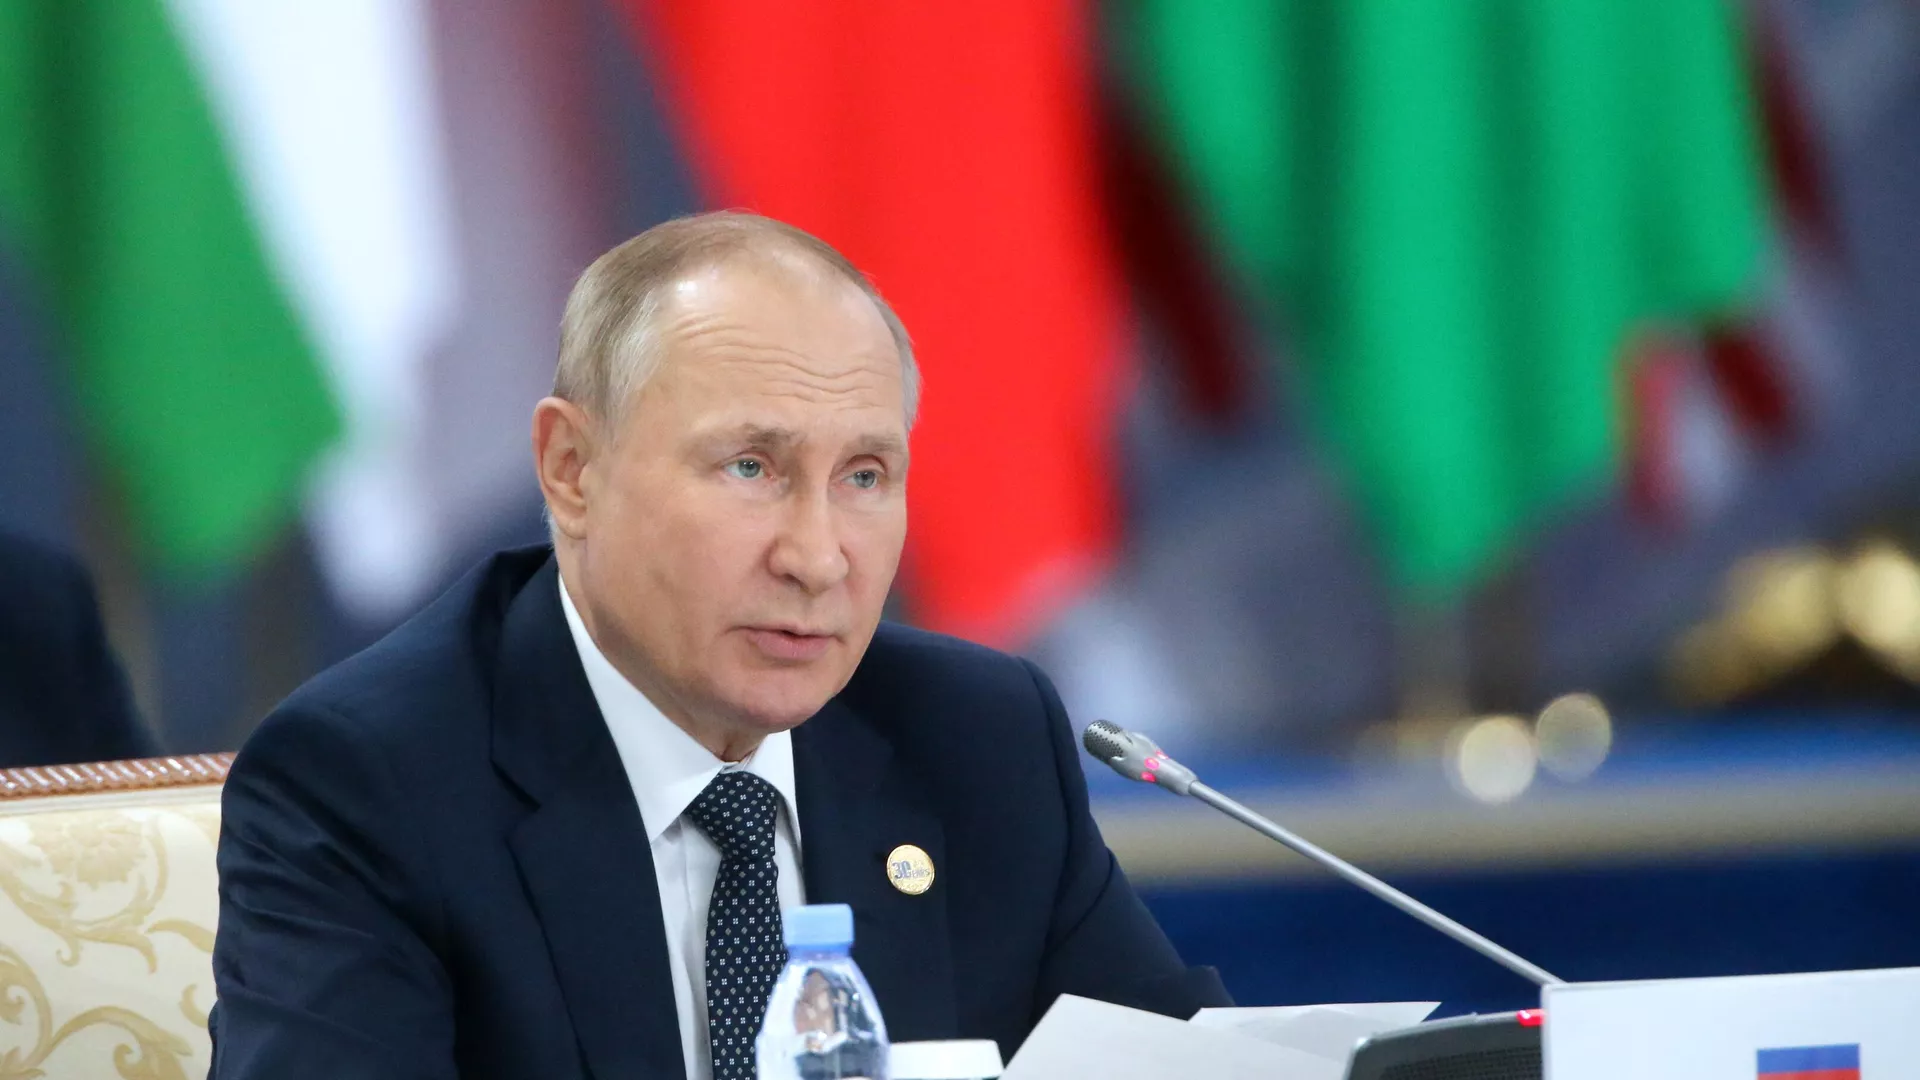 بوتين: المحاولات الغربية الممنهجة لتدمير الاقتصاد الروسي فشلت وتفشل مستقبلا